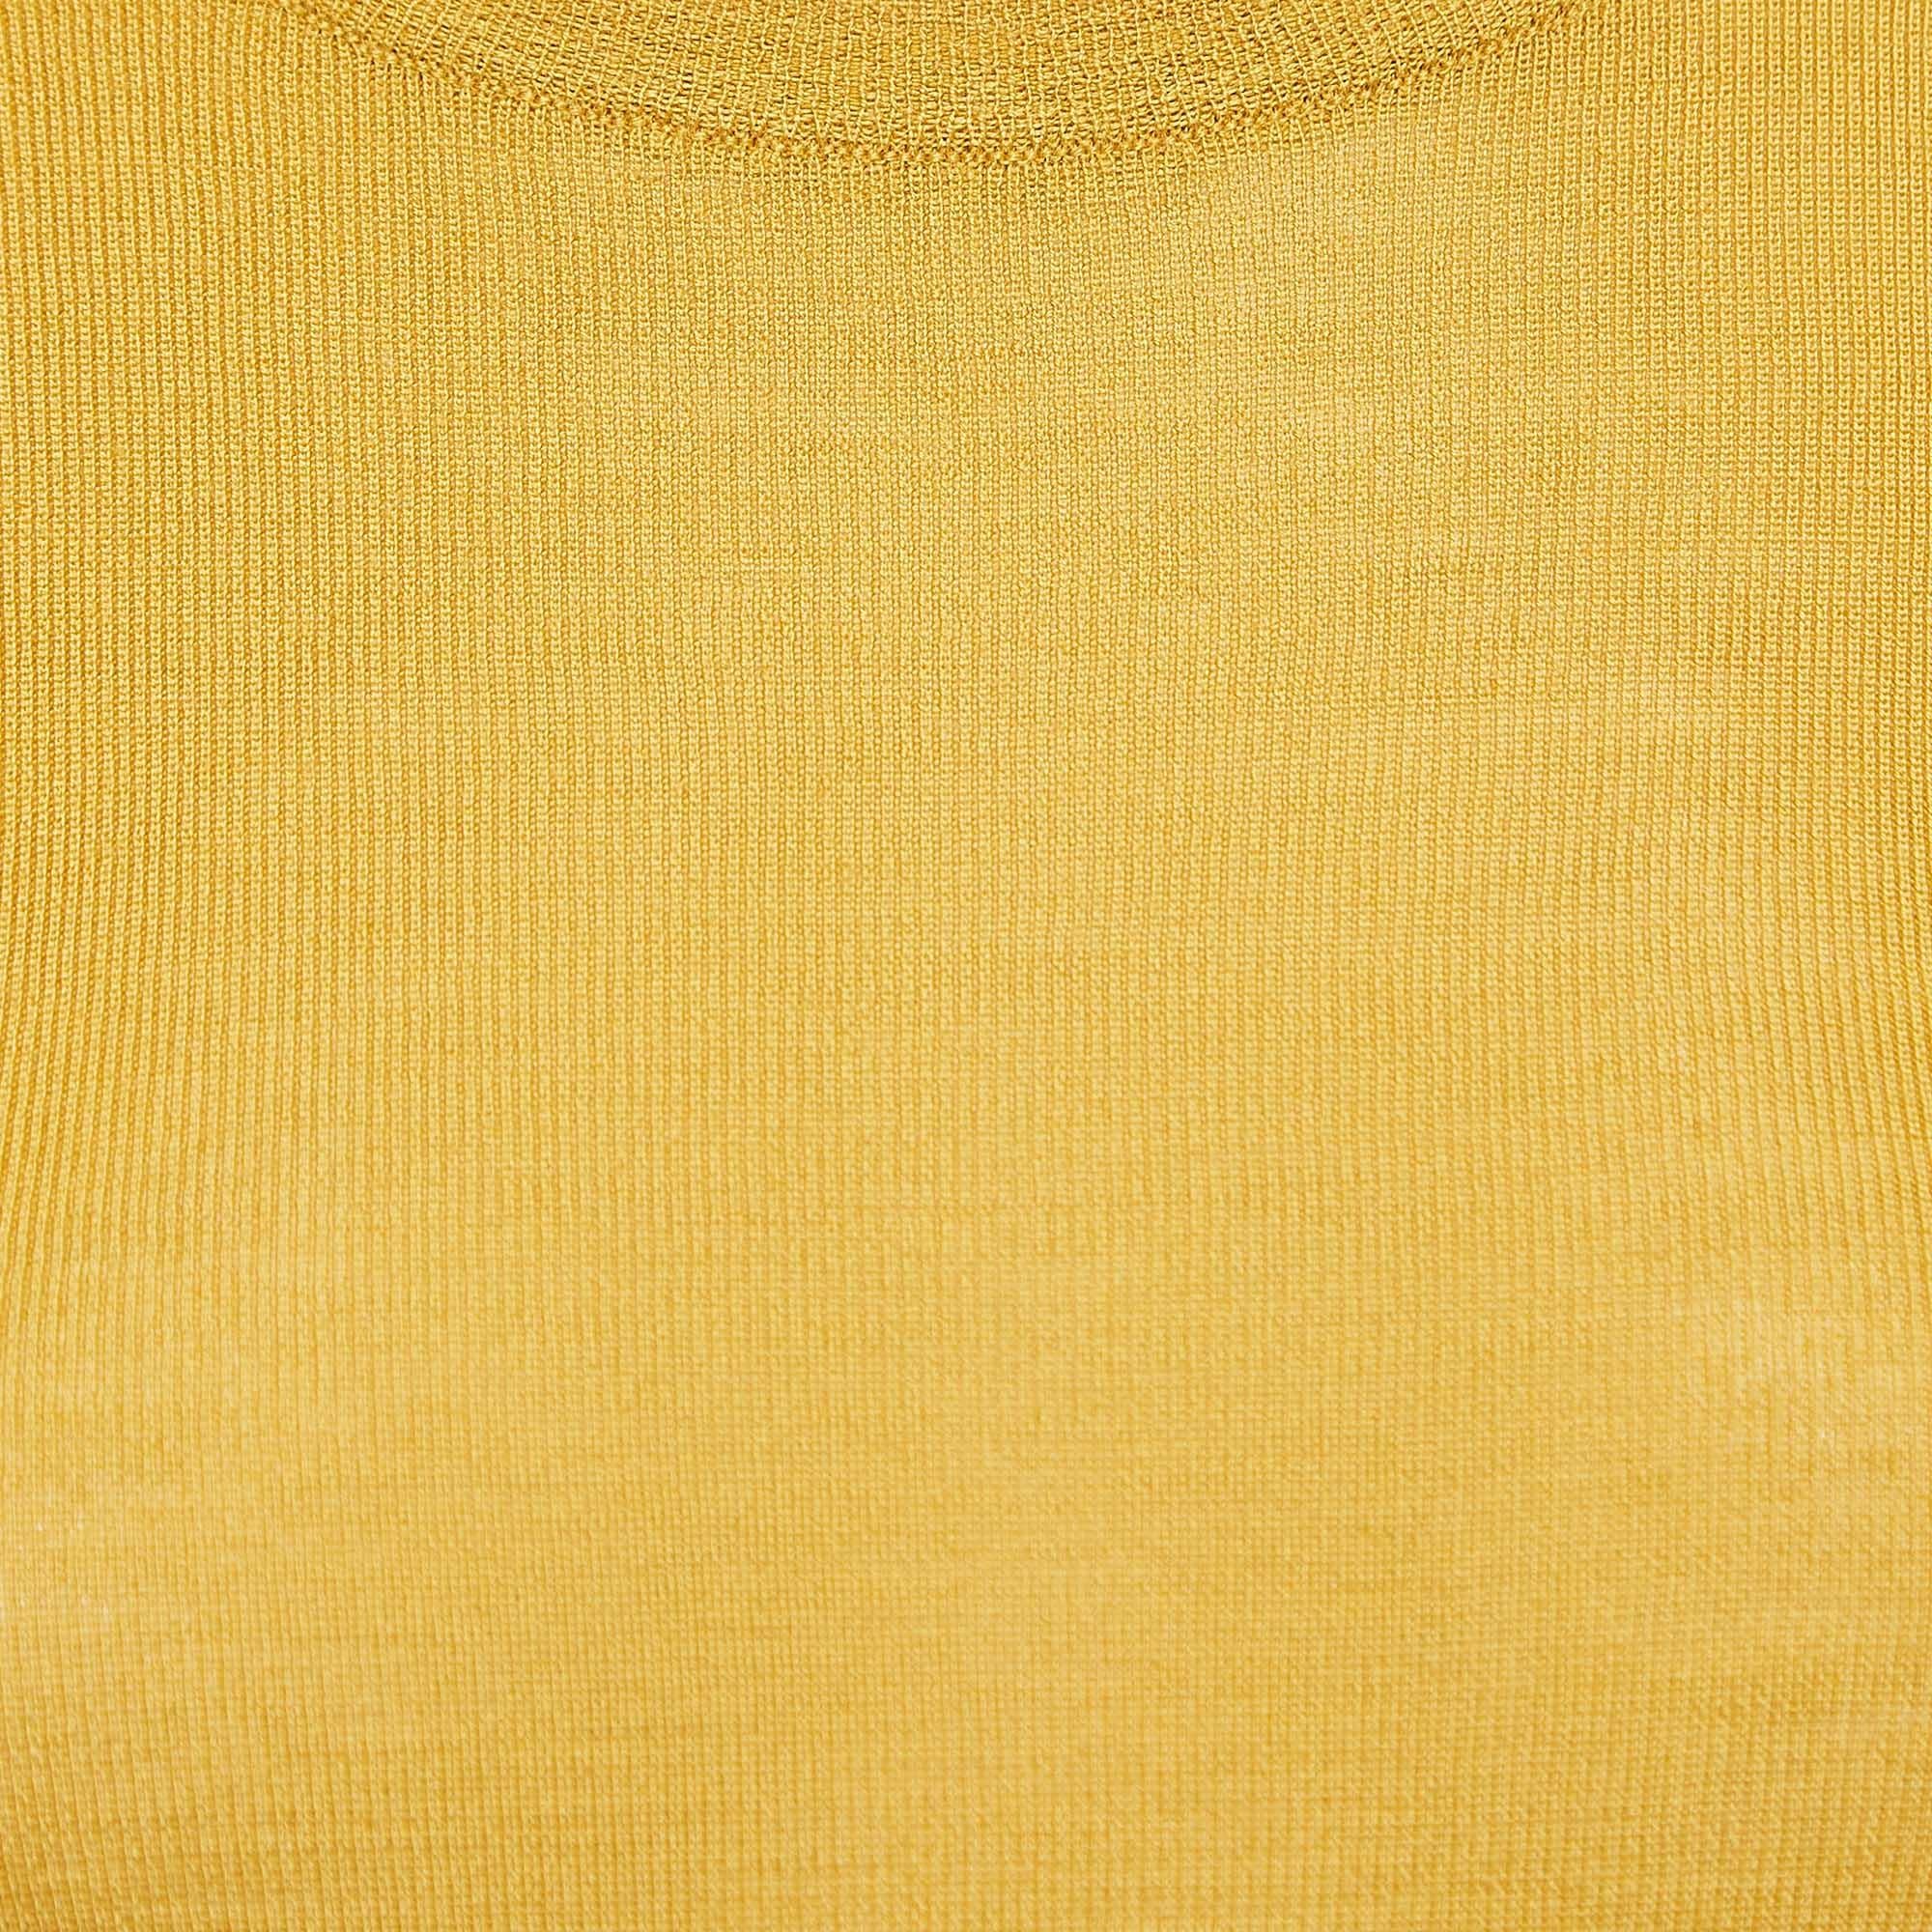 Gucci Yellow Striped Knit Top M In Good Condition For Sale In Dubai, Al Qouz 2